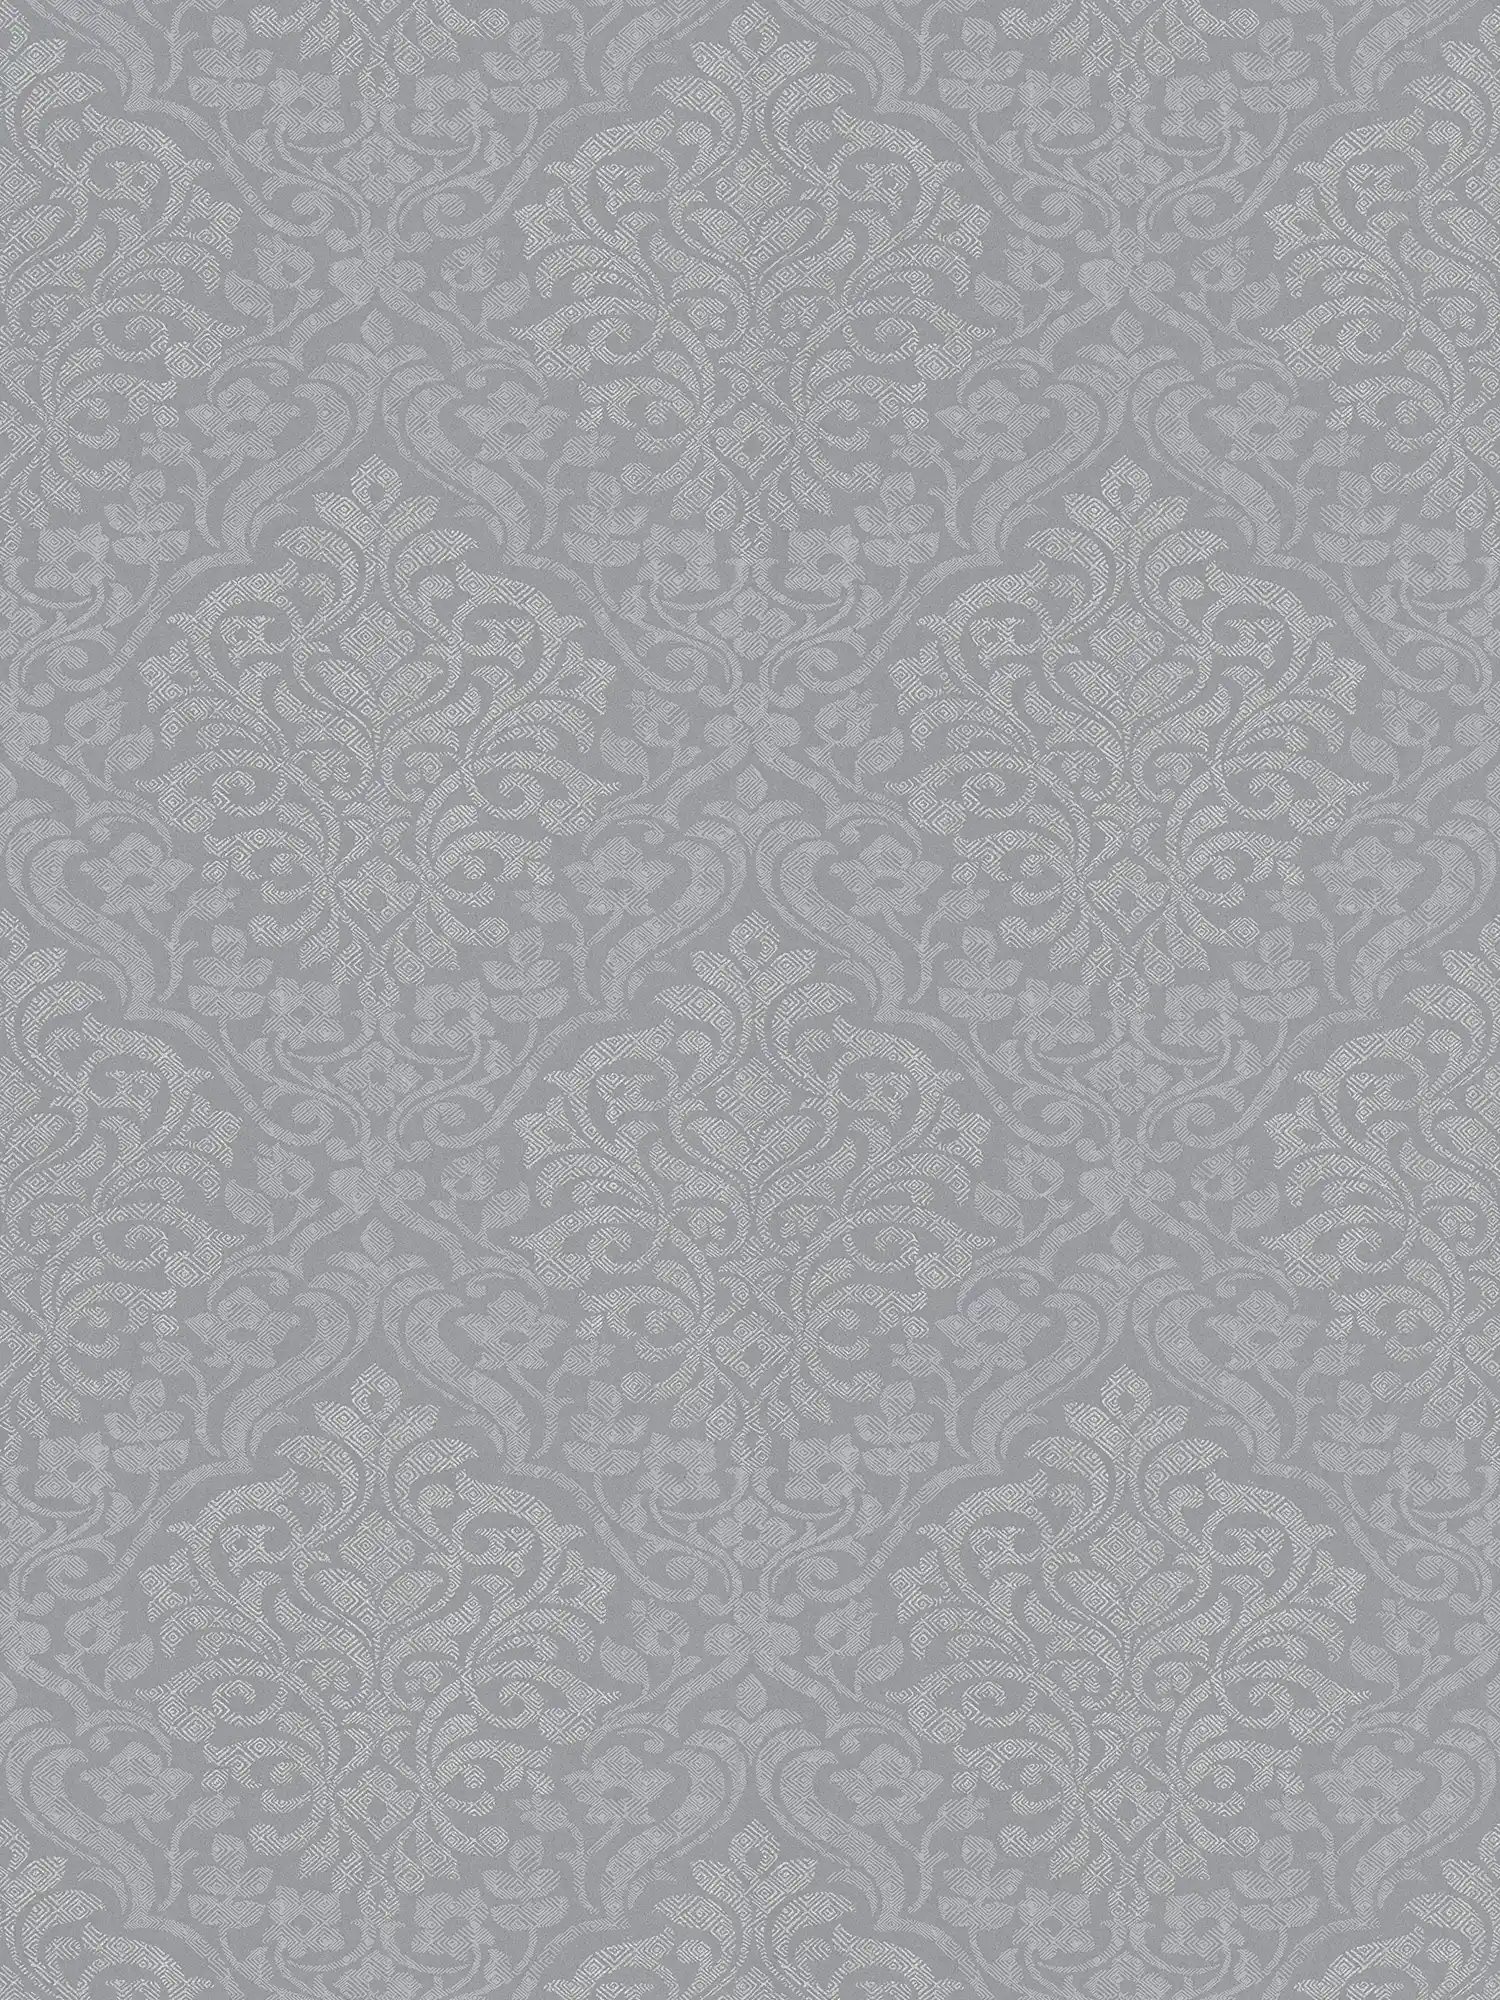 Gebloemd ornamentaal behang ruitpatroon in ethno stijl - grijs, zilver
